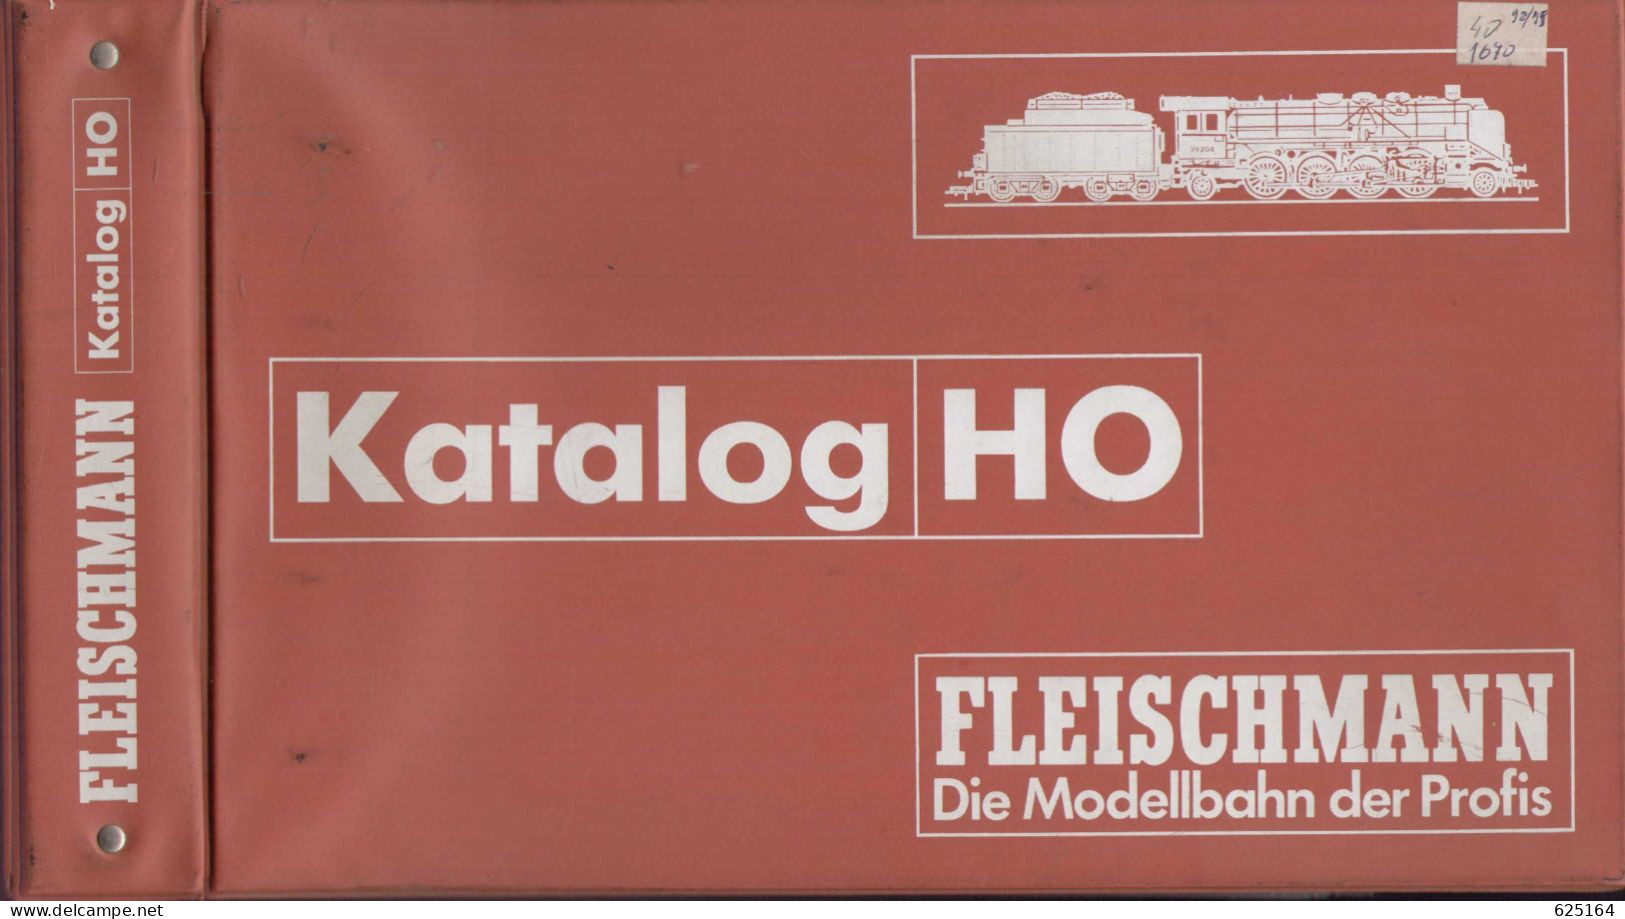 Catalogue FLEISCHMANN 1998/99 Händlerkatalog HO Die Modellbahn Der Profis Mit Original Ordner - German